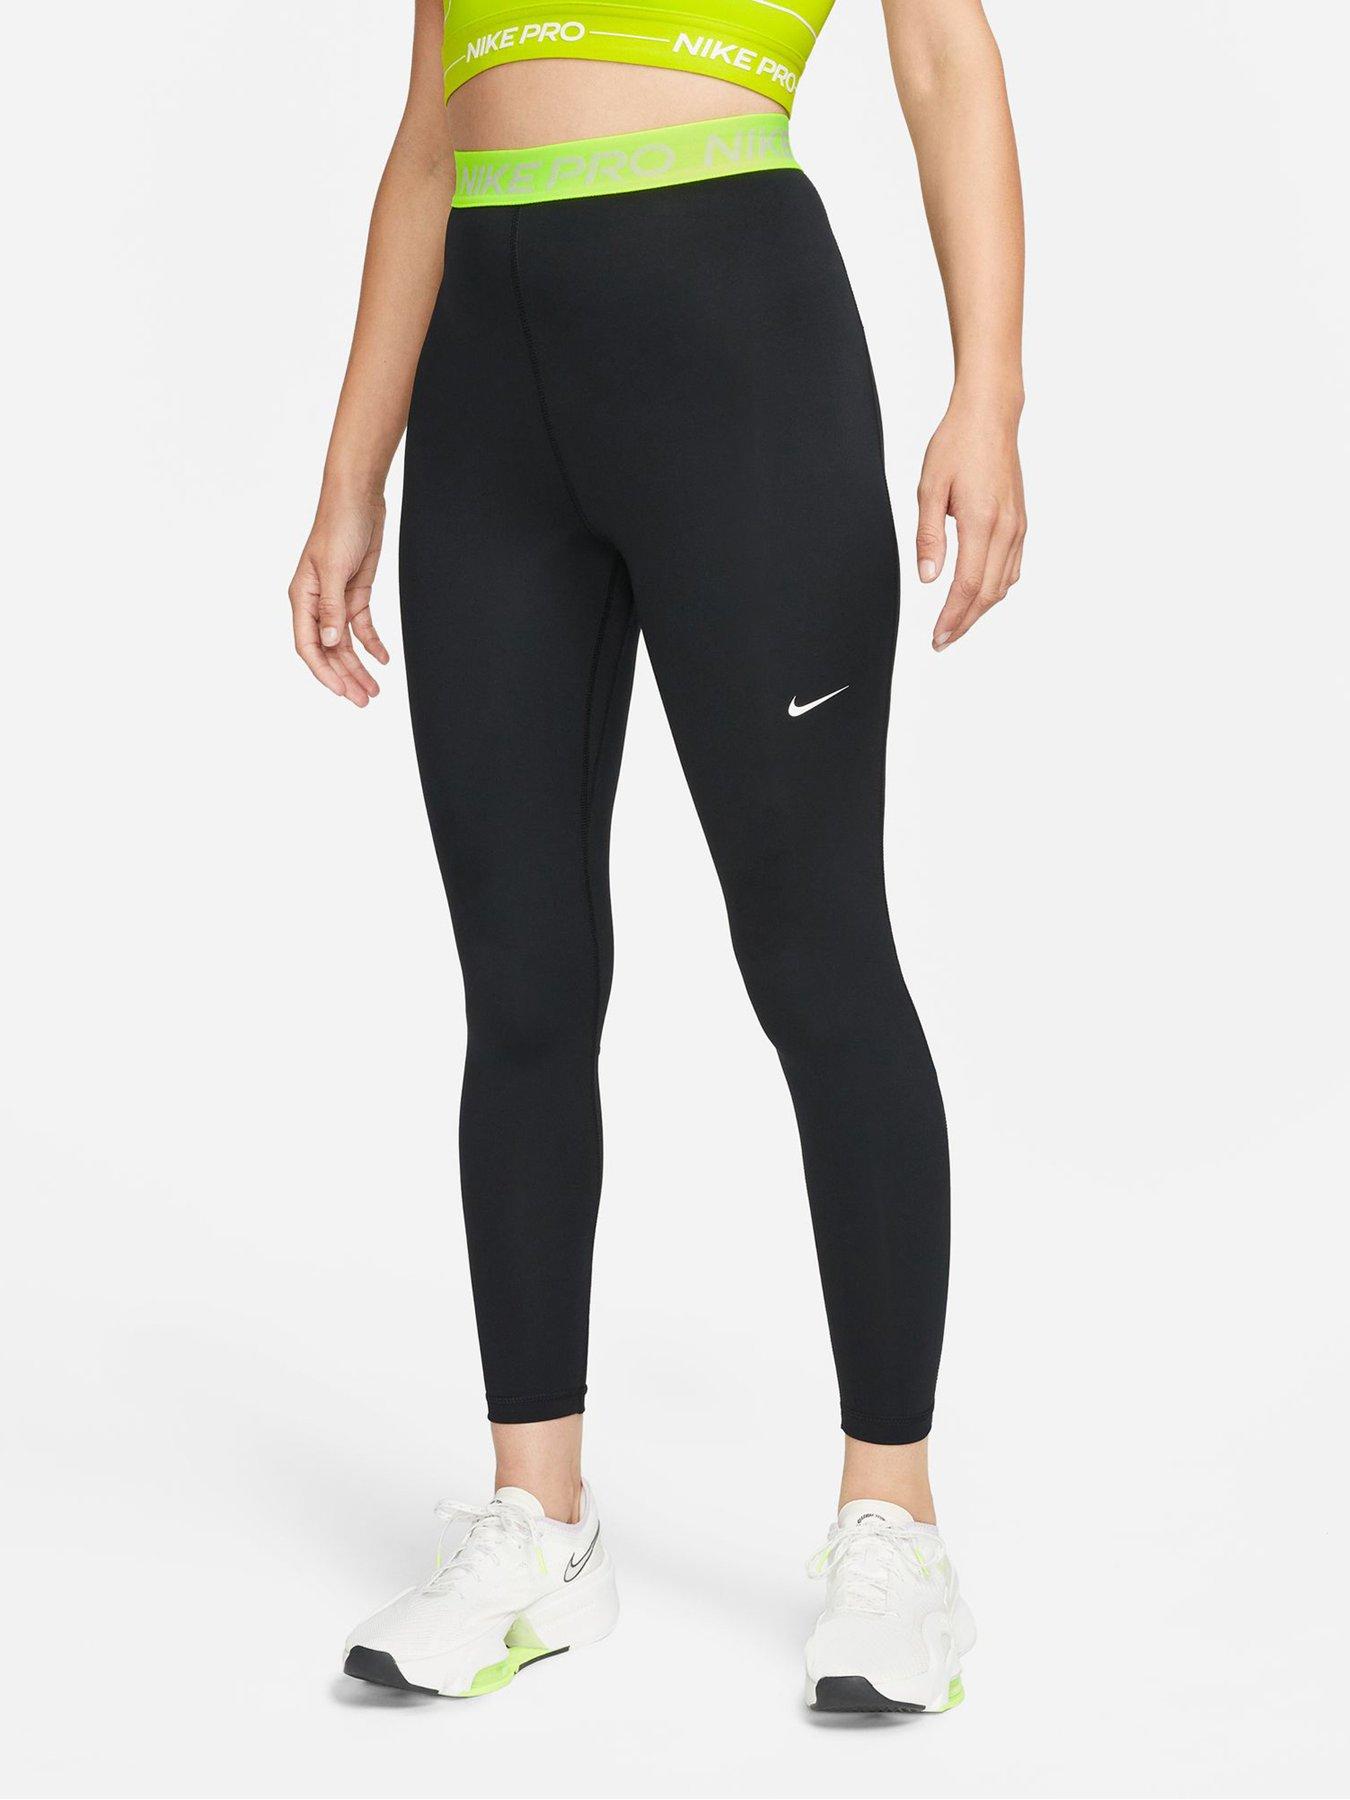 Nike Pro 365 Women's High-Waisted Mesh Panel Leggings